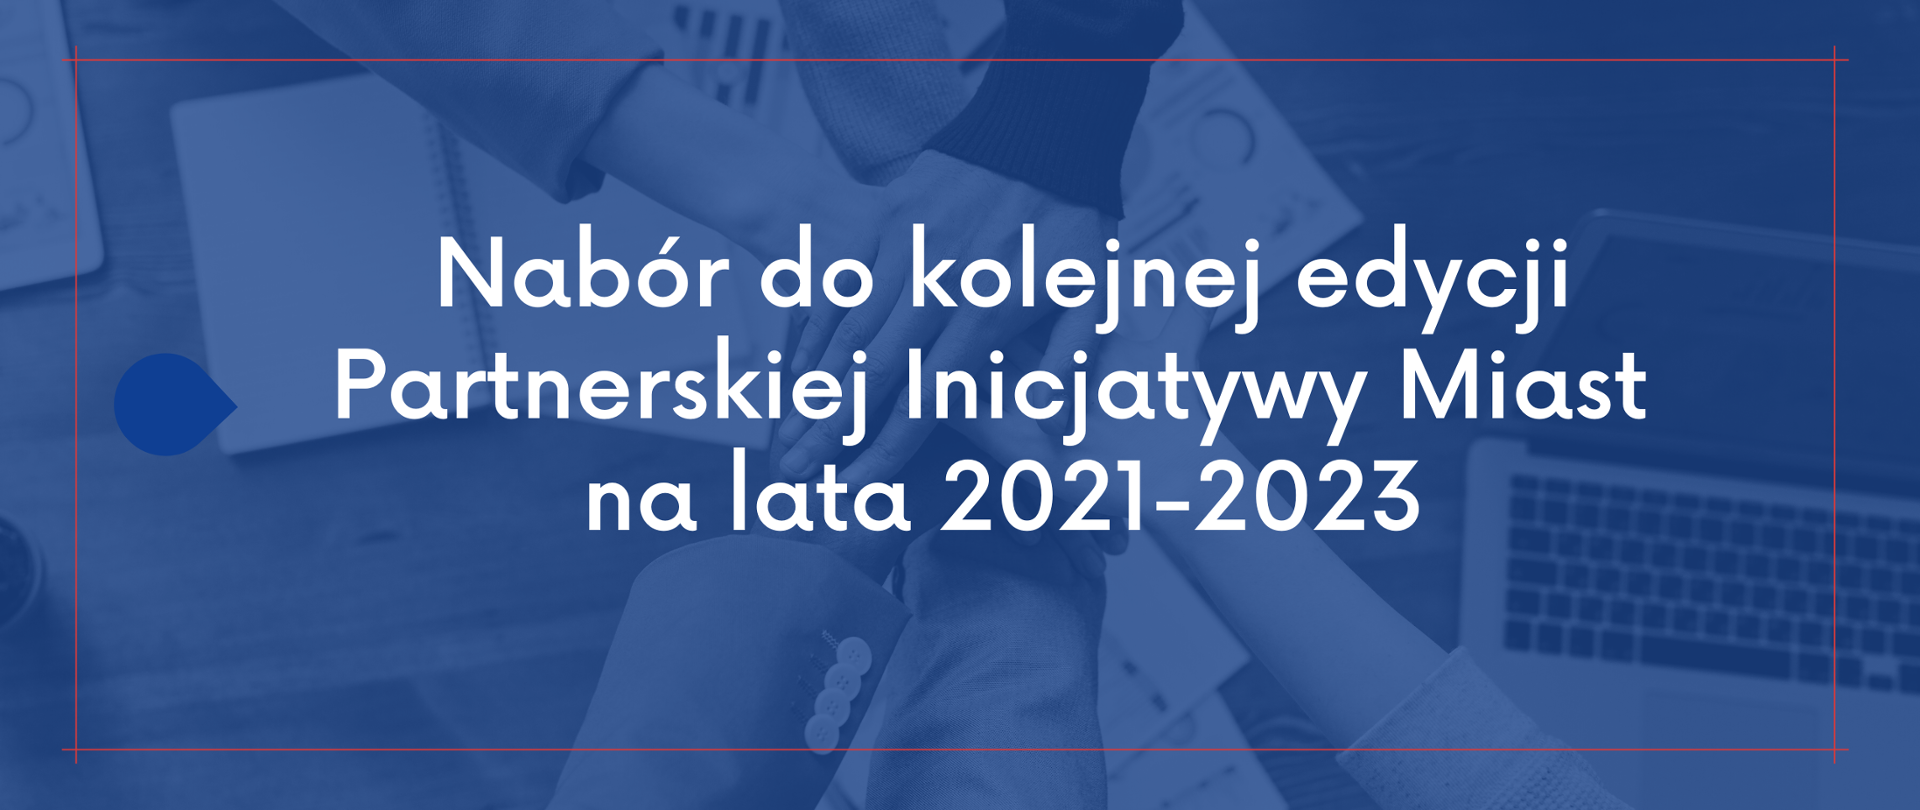 Nabór do kolejnej edycji Partnerskiej Inicjatywy Miast na lata 2021-2023